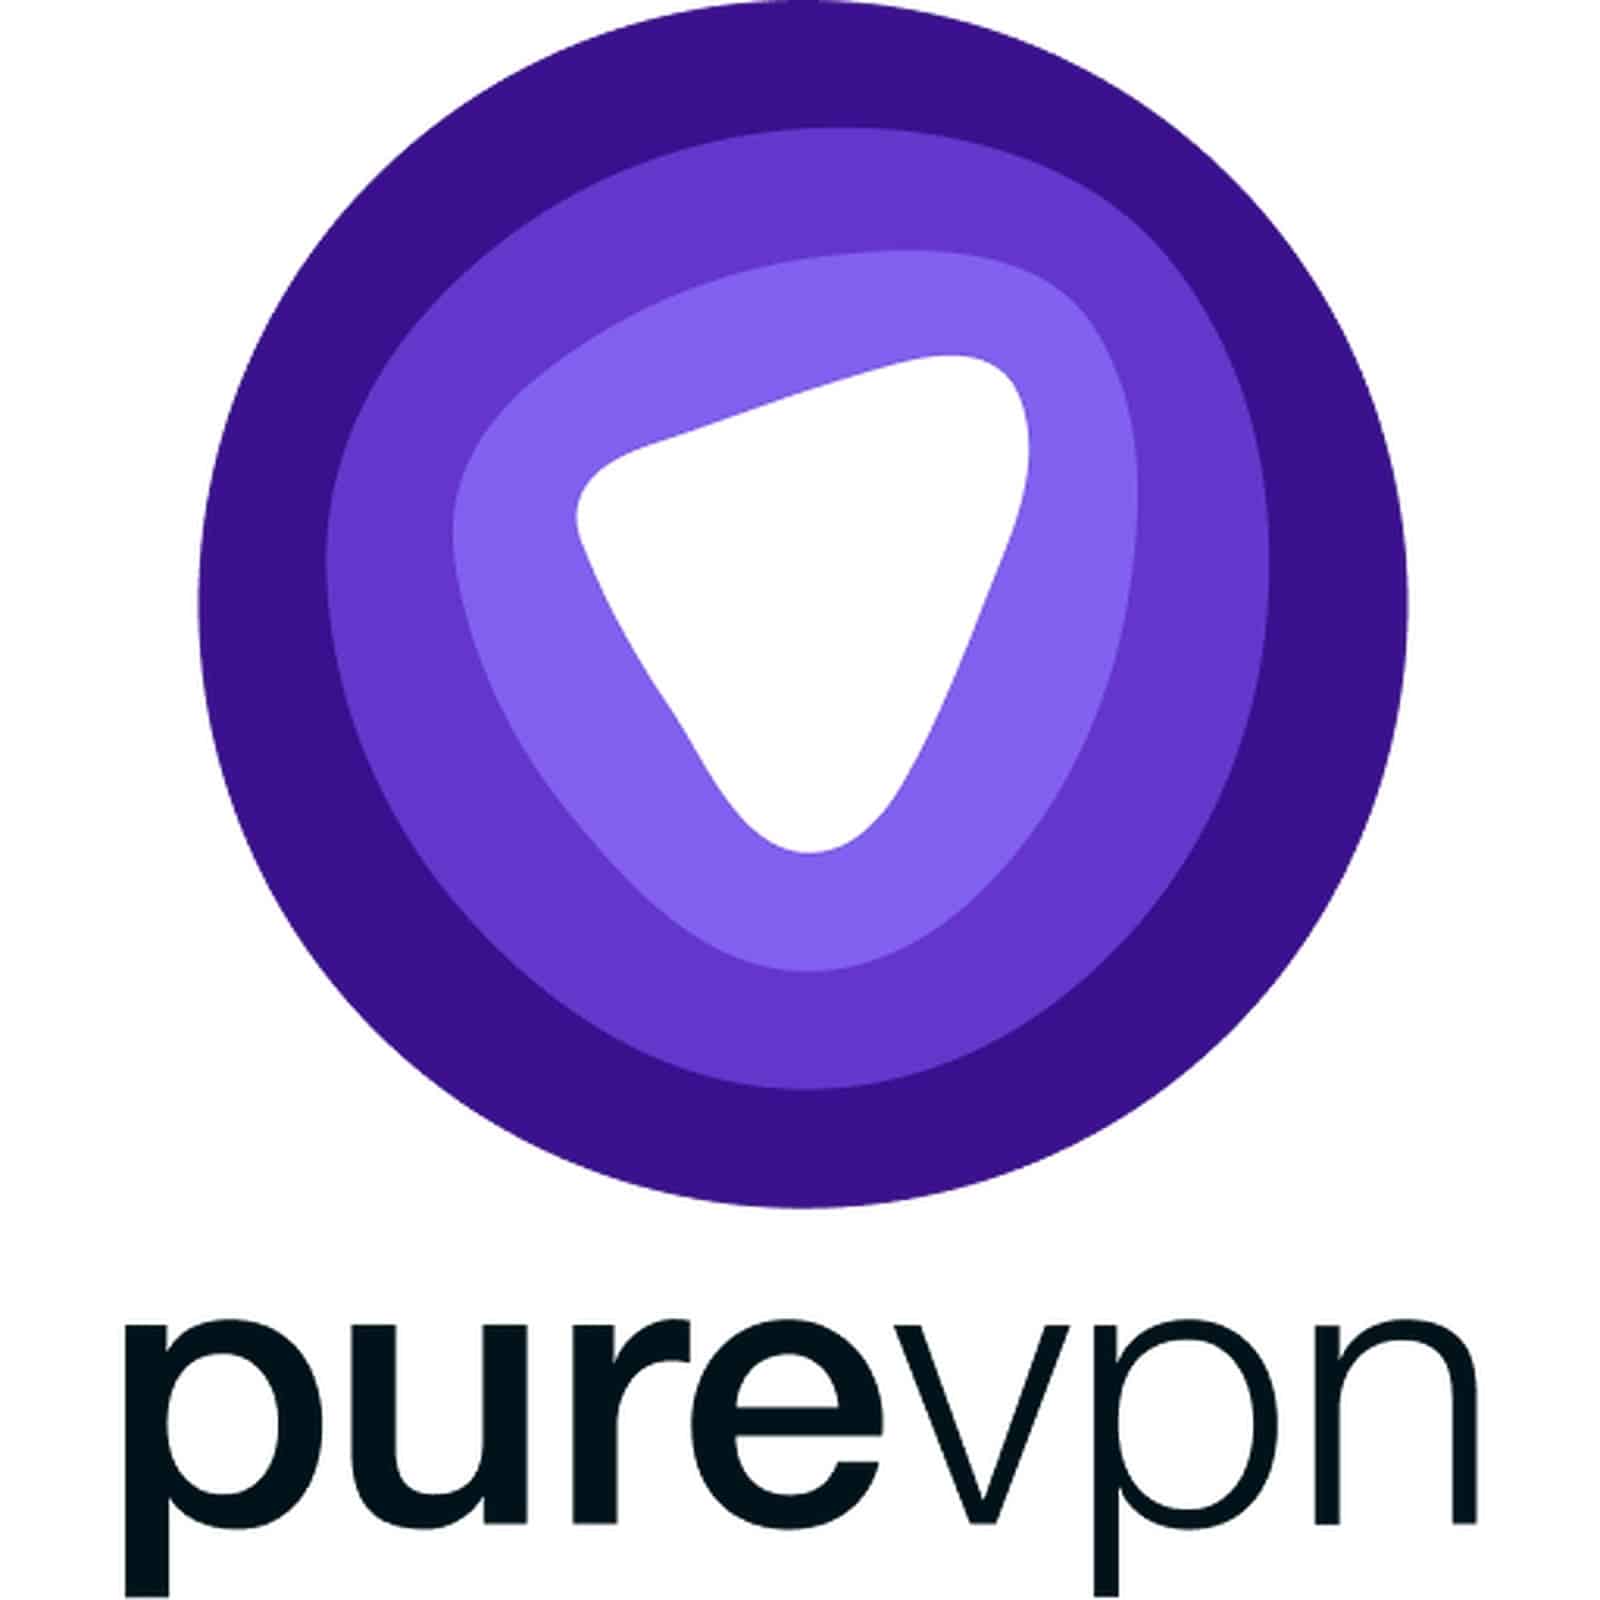 Le VPN pas cher du moment, c'est PureVPN : seulement 1,24 €/mois